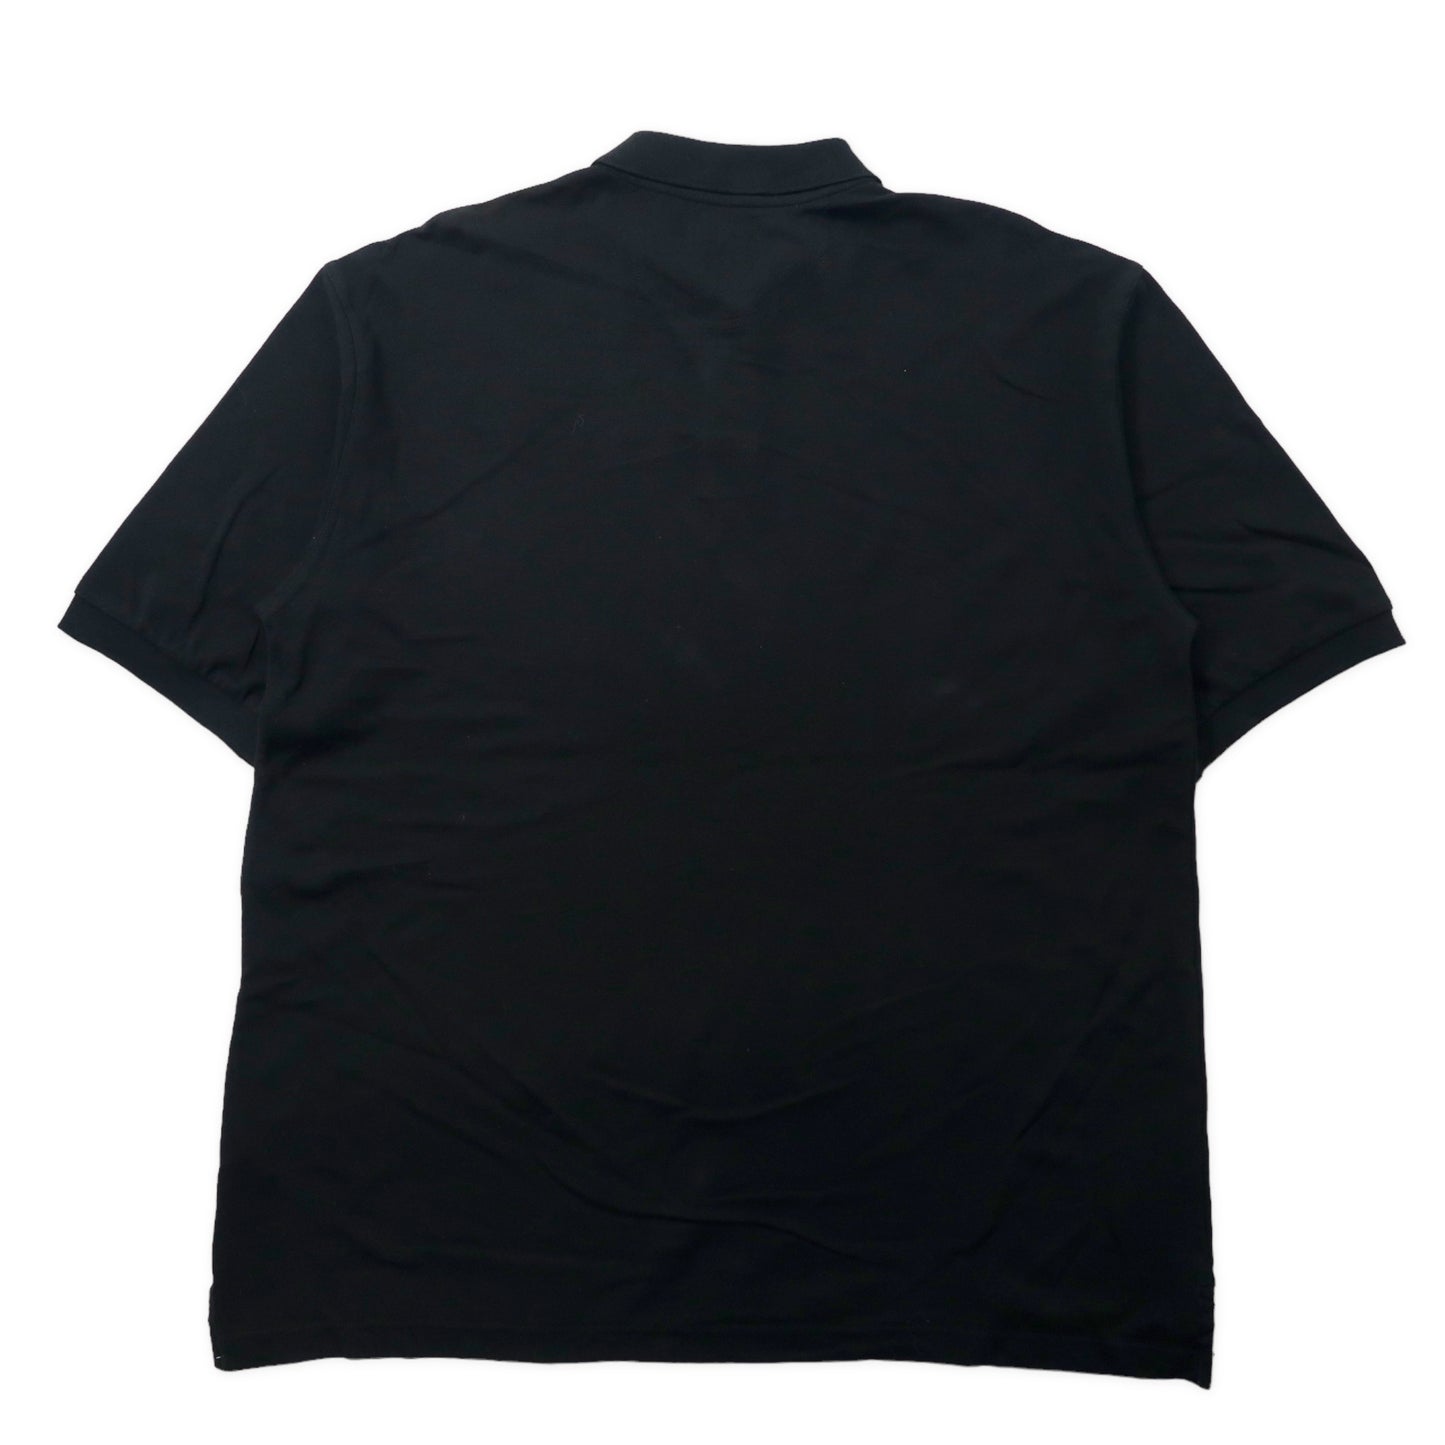 カナダ製 FILA 90年代 ポロシャツ XL ブラック コットン ワンポイントロゴ ビッグサイズ 未使用品